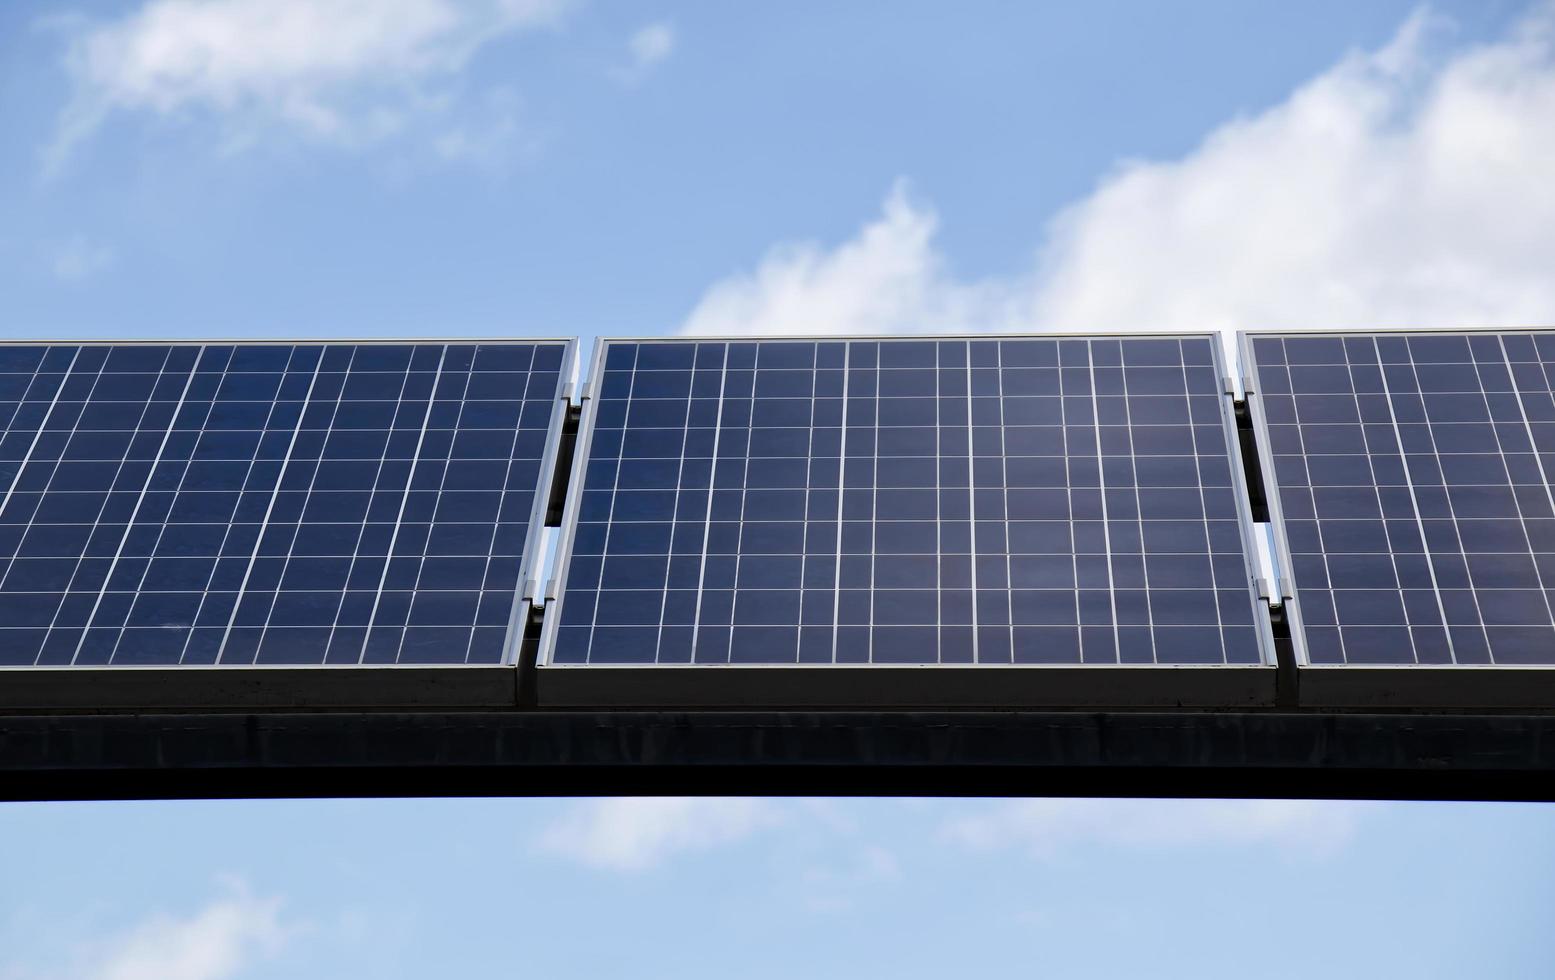 Sonnenkollektoren für die Erzeugung erneuerbarer elektrischer Energie. foto